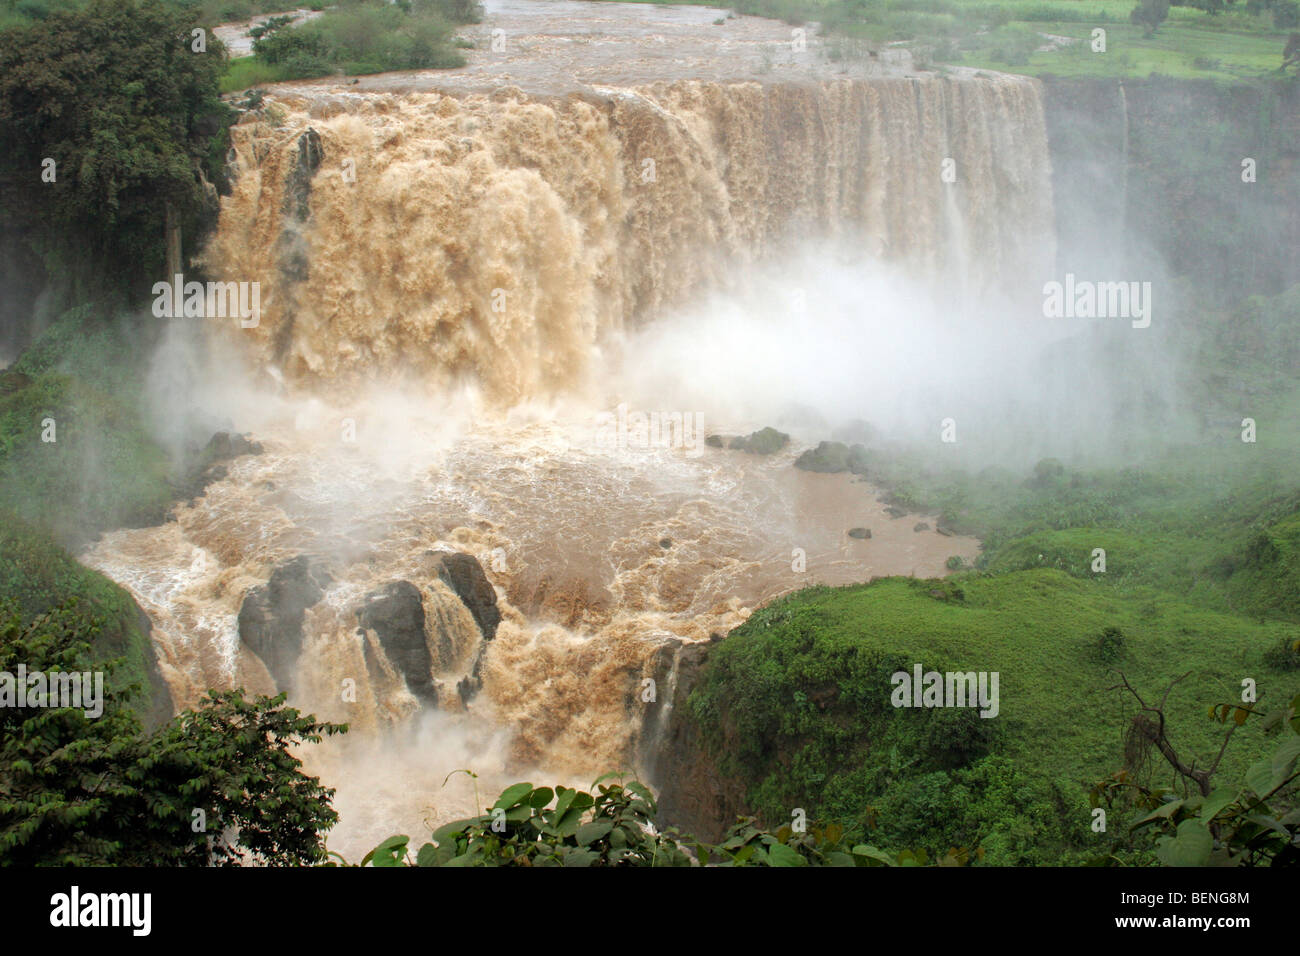 Les chutes du Nil Bleu / Tis Abay / Tis Issat près de Bahar Dar, l'Éthiopie, l'Afrique de l'Est Banque D'Images